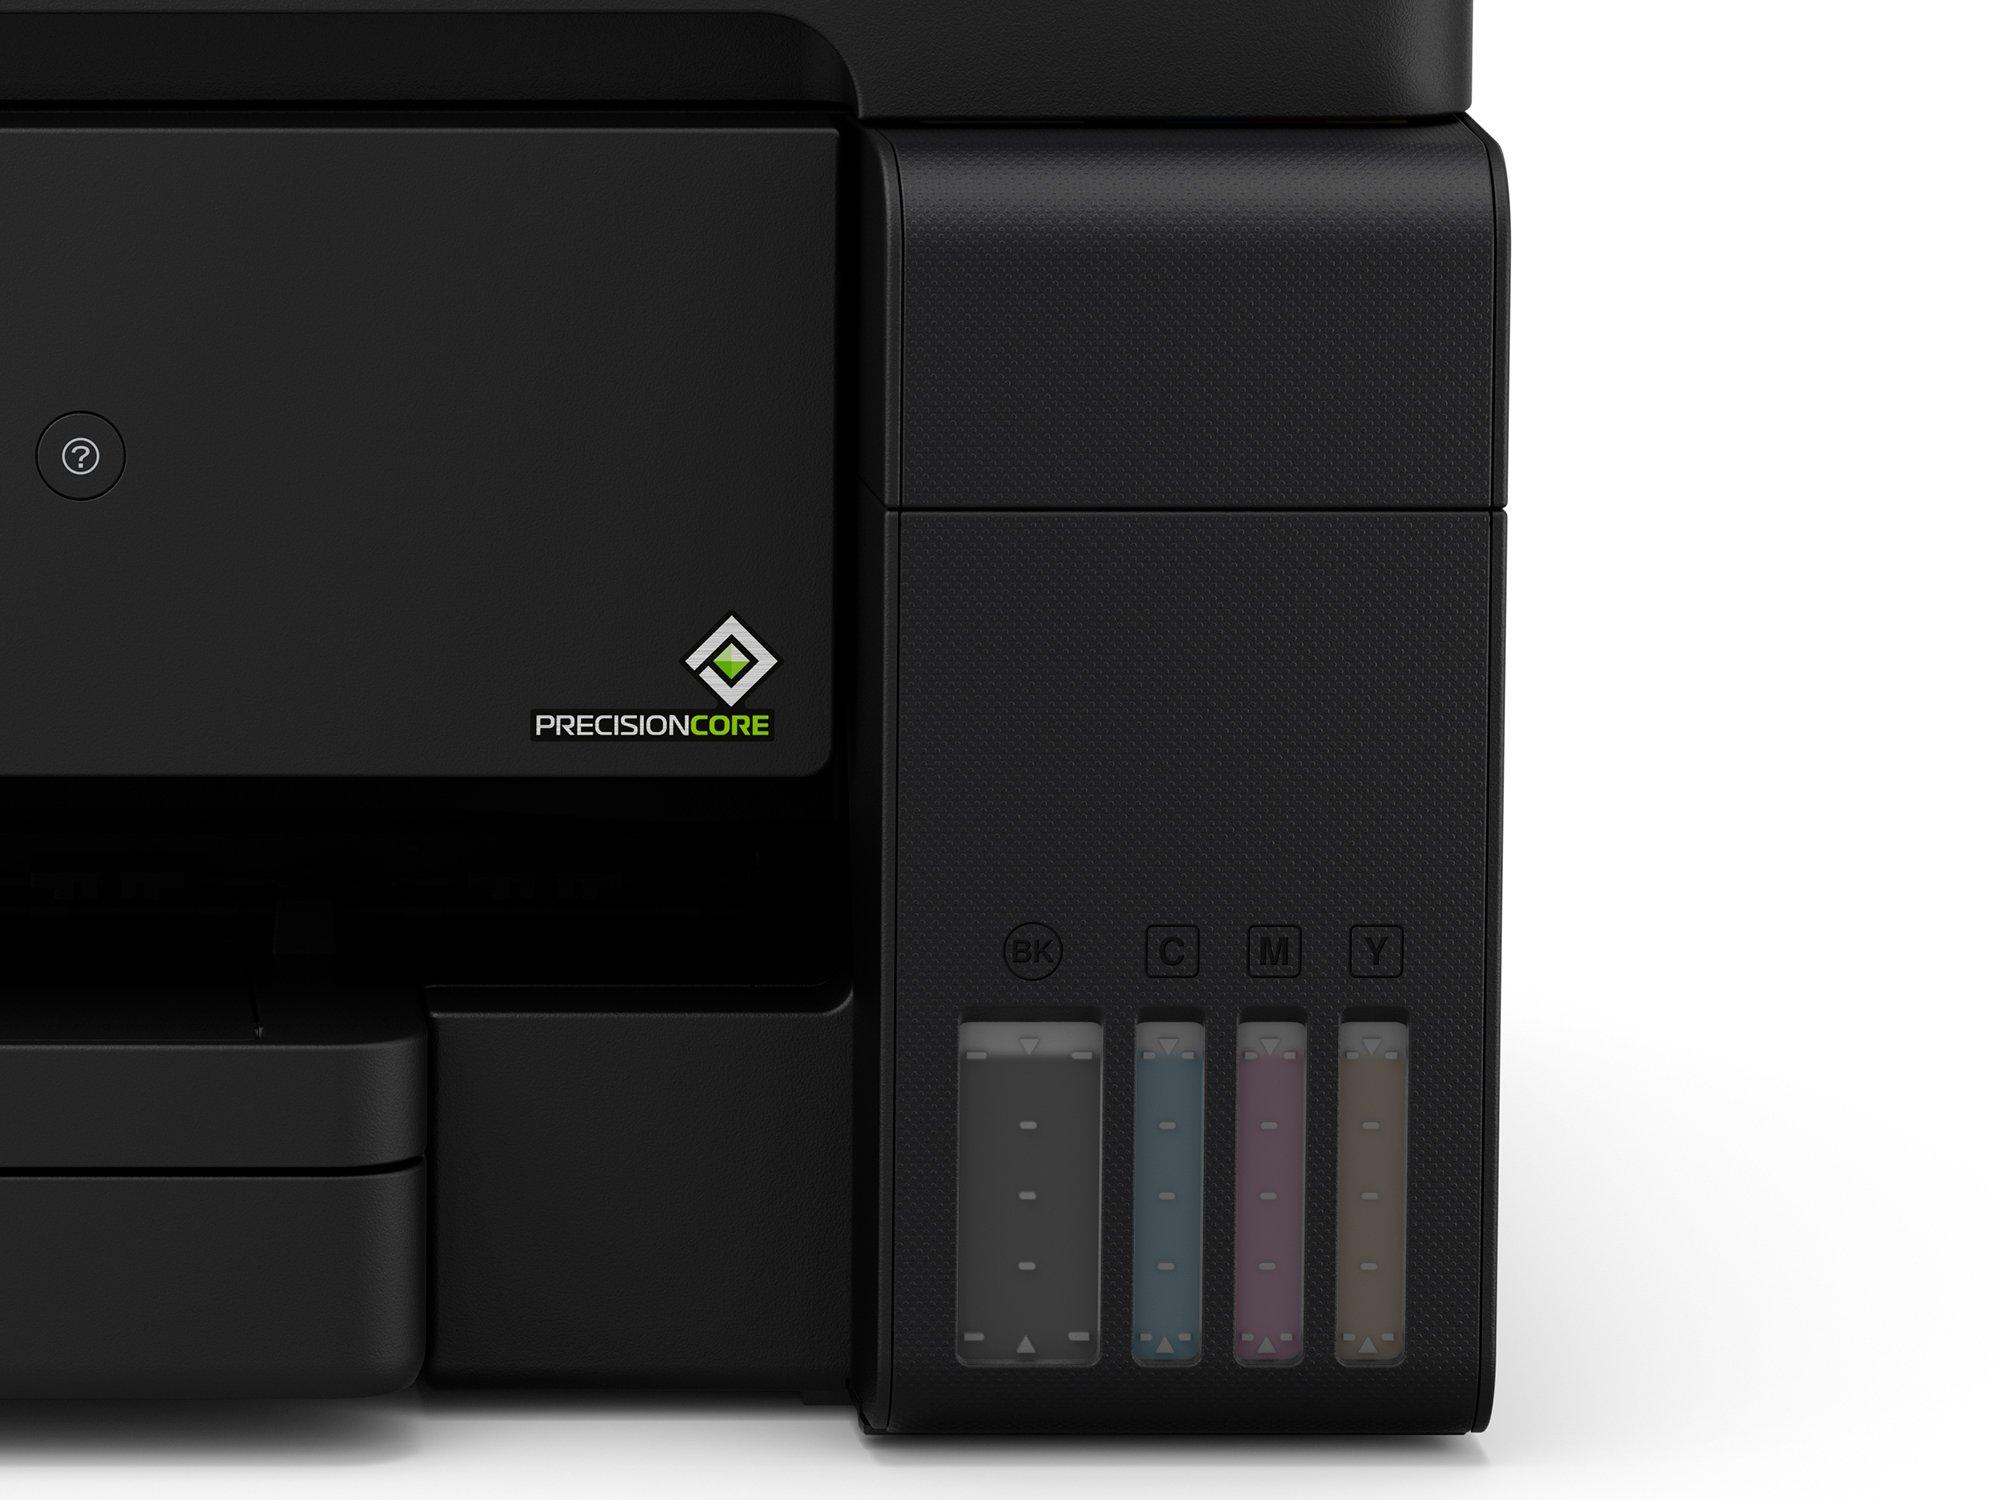 Imprimante Epson EcoTank L14150 multifonction/A3/couleur/réservoir